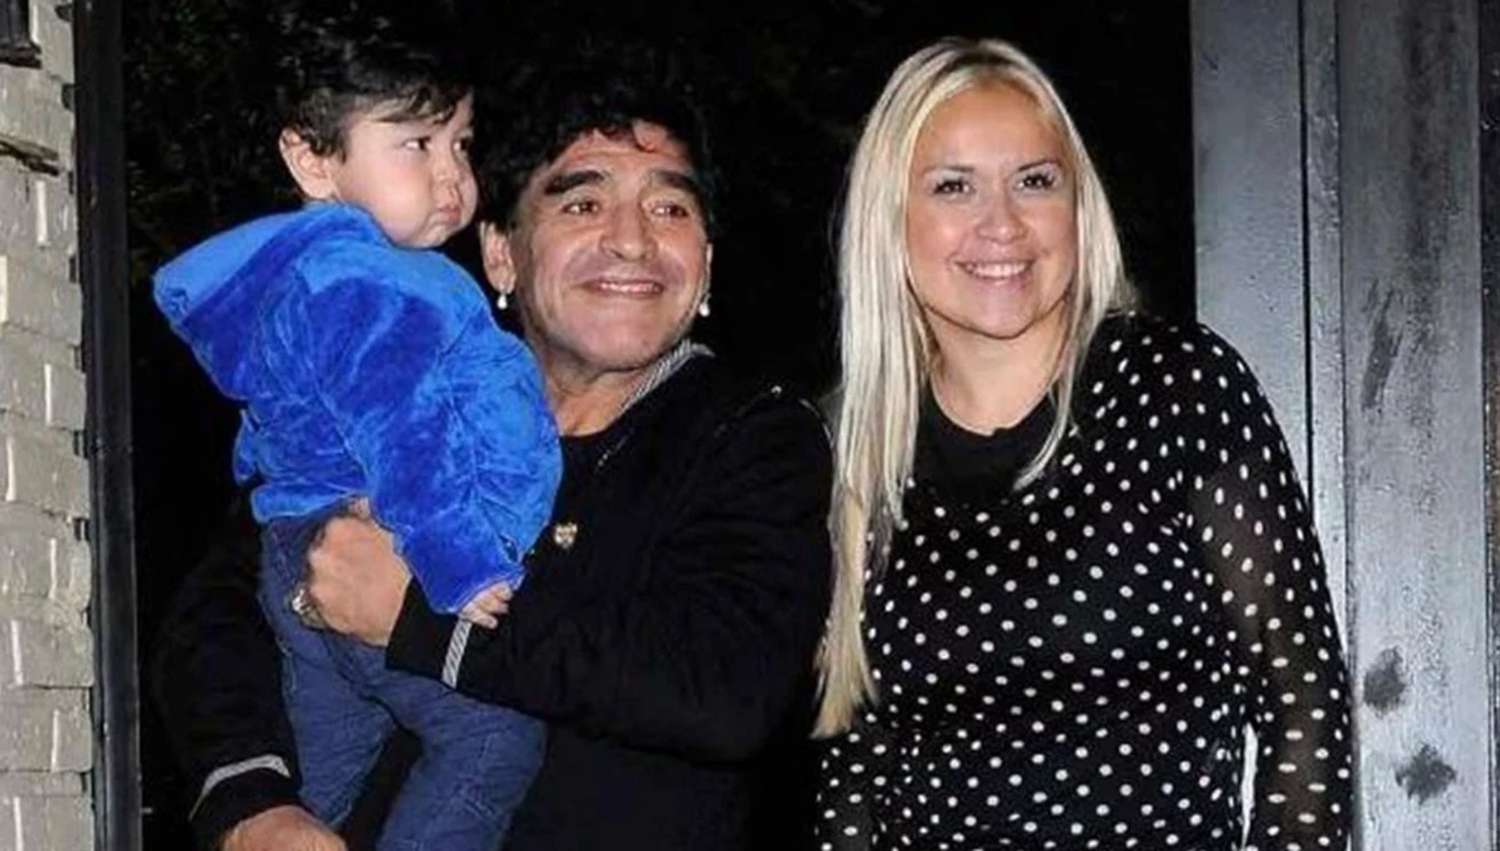 Mario Baudry contó la situación que vivió con Verónica en la casa de Maradona